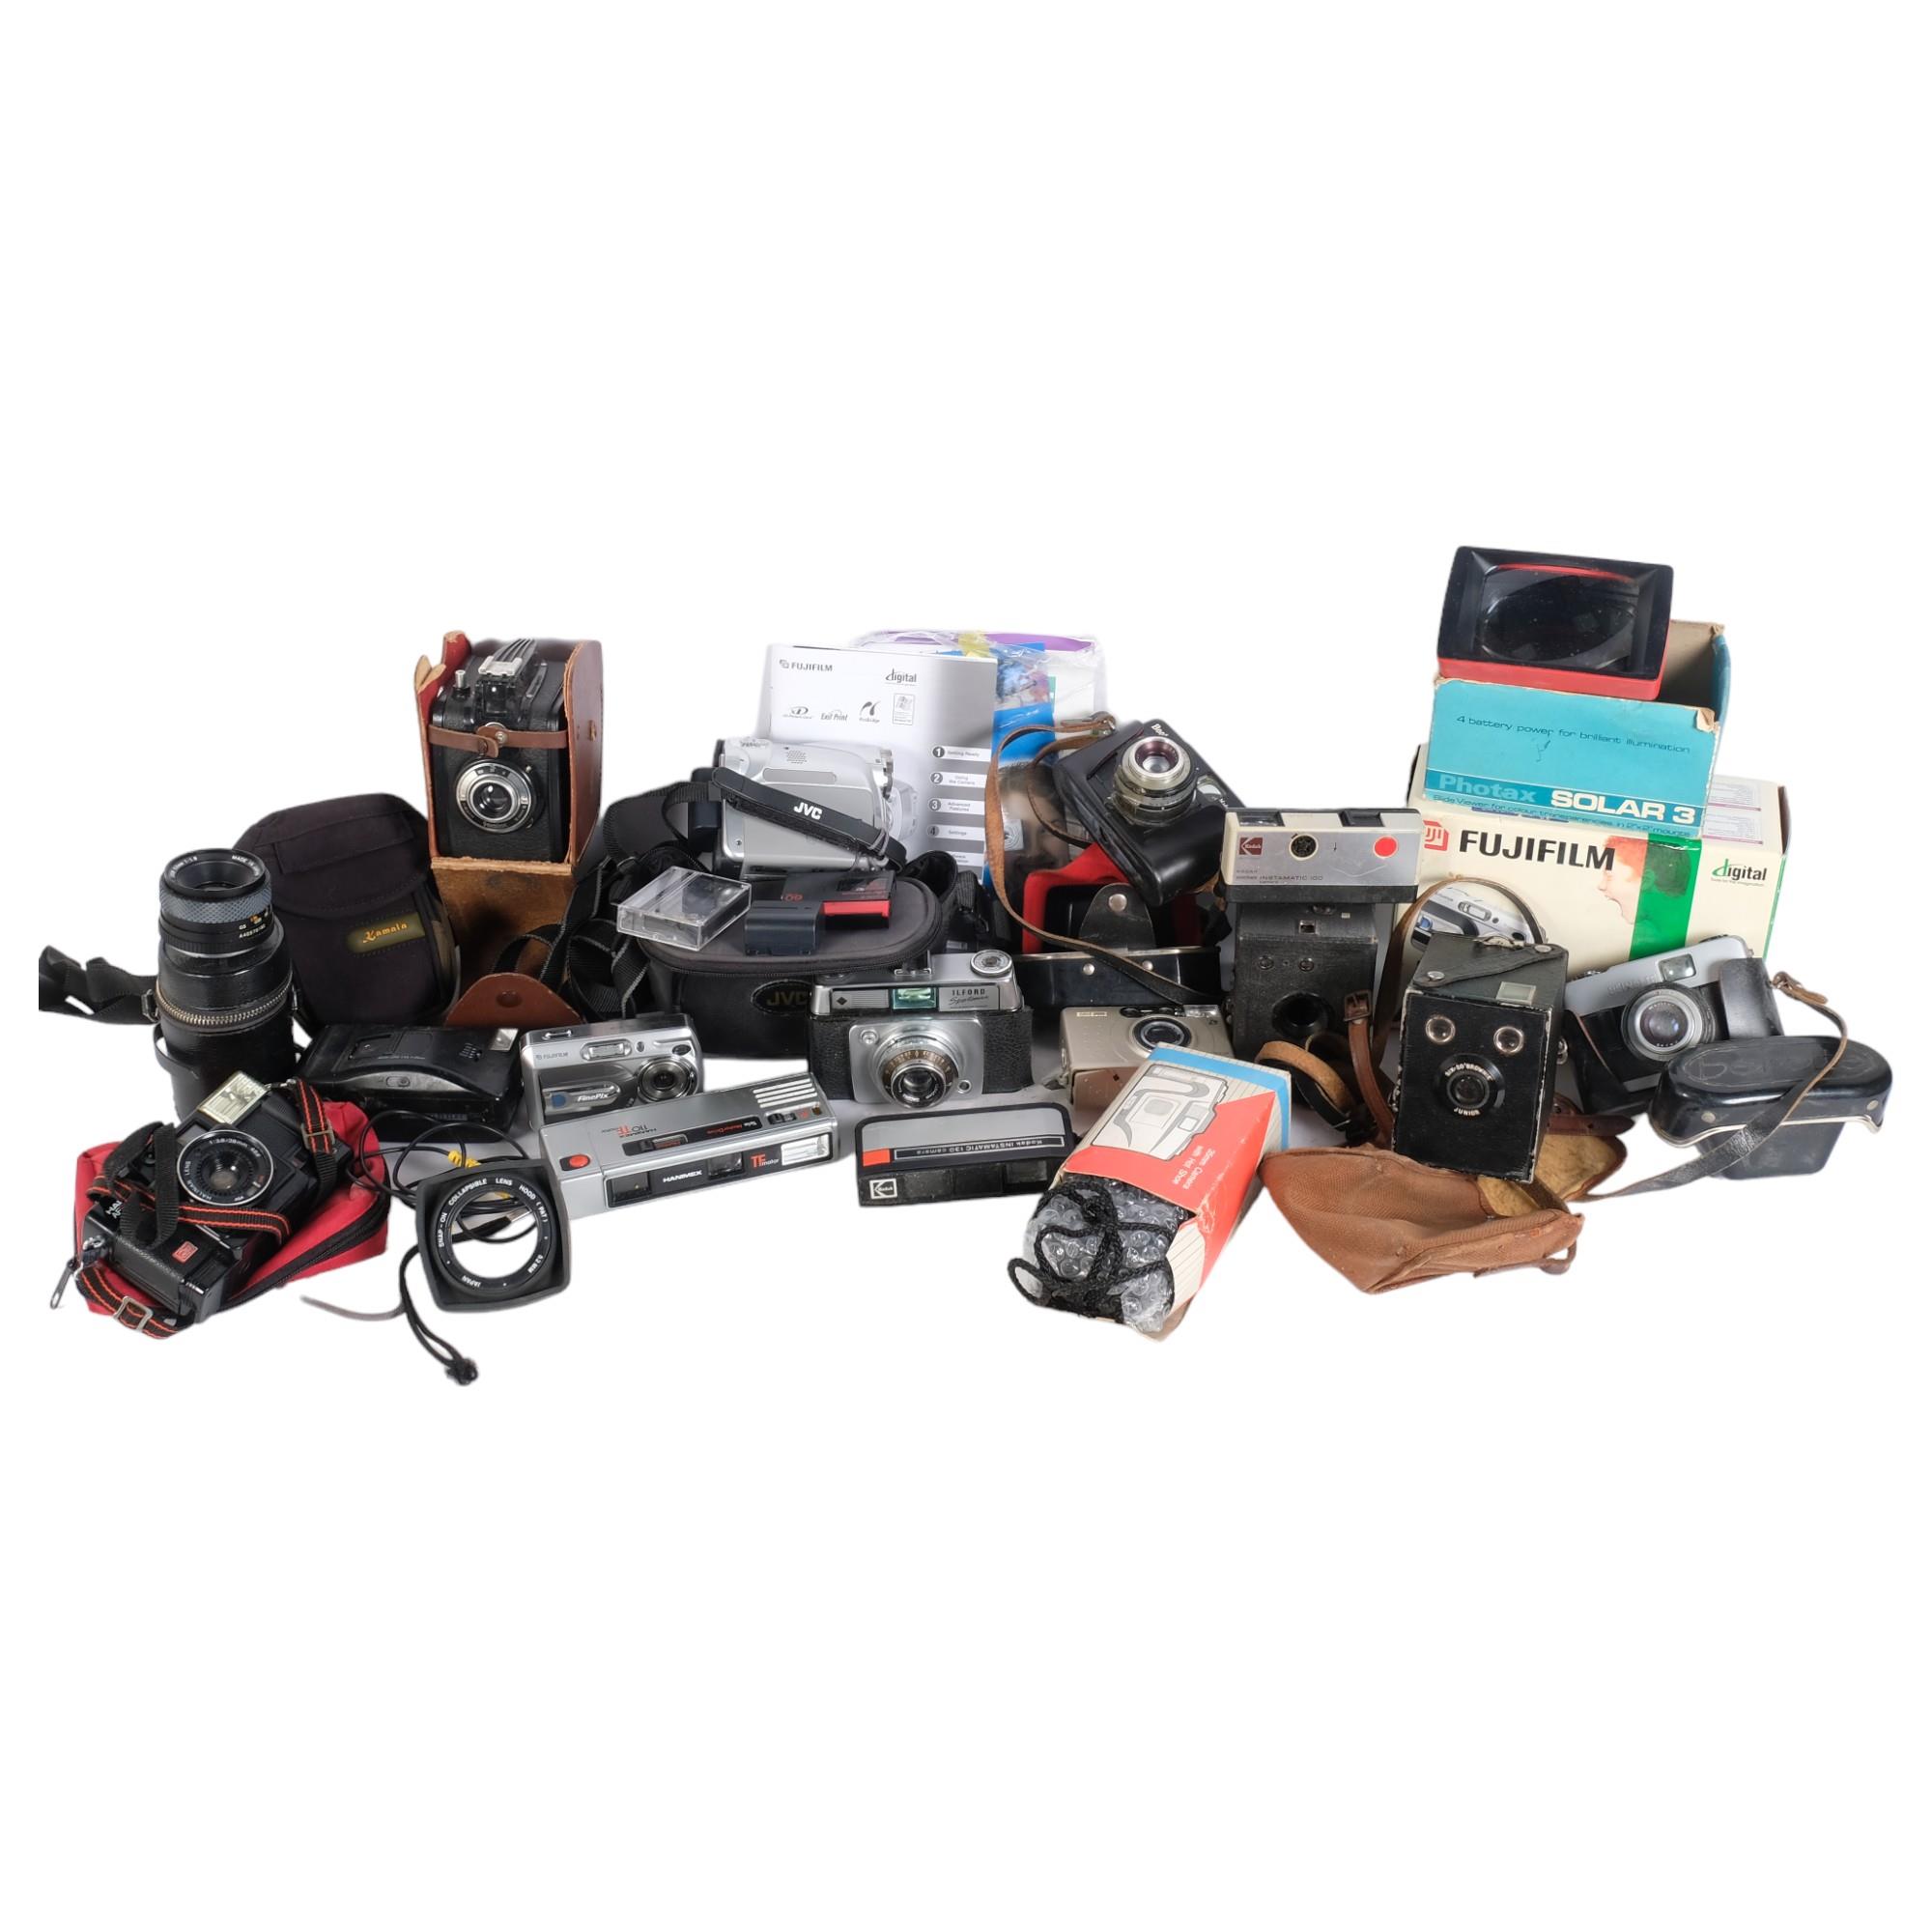 A quantity of various cameras and associated equipment, including a Fujifilm Finepix A330, a Hanimex